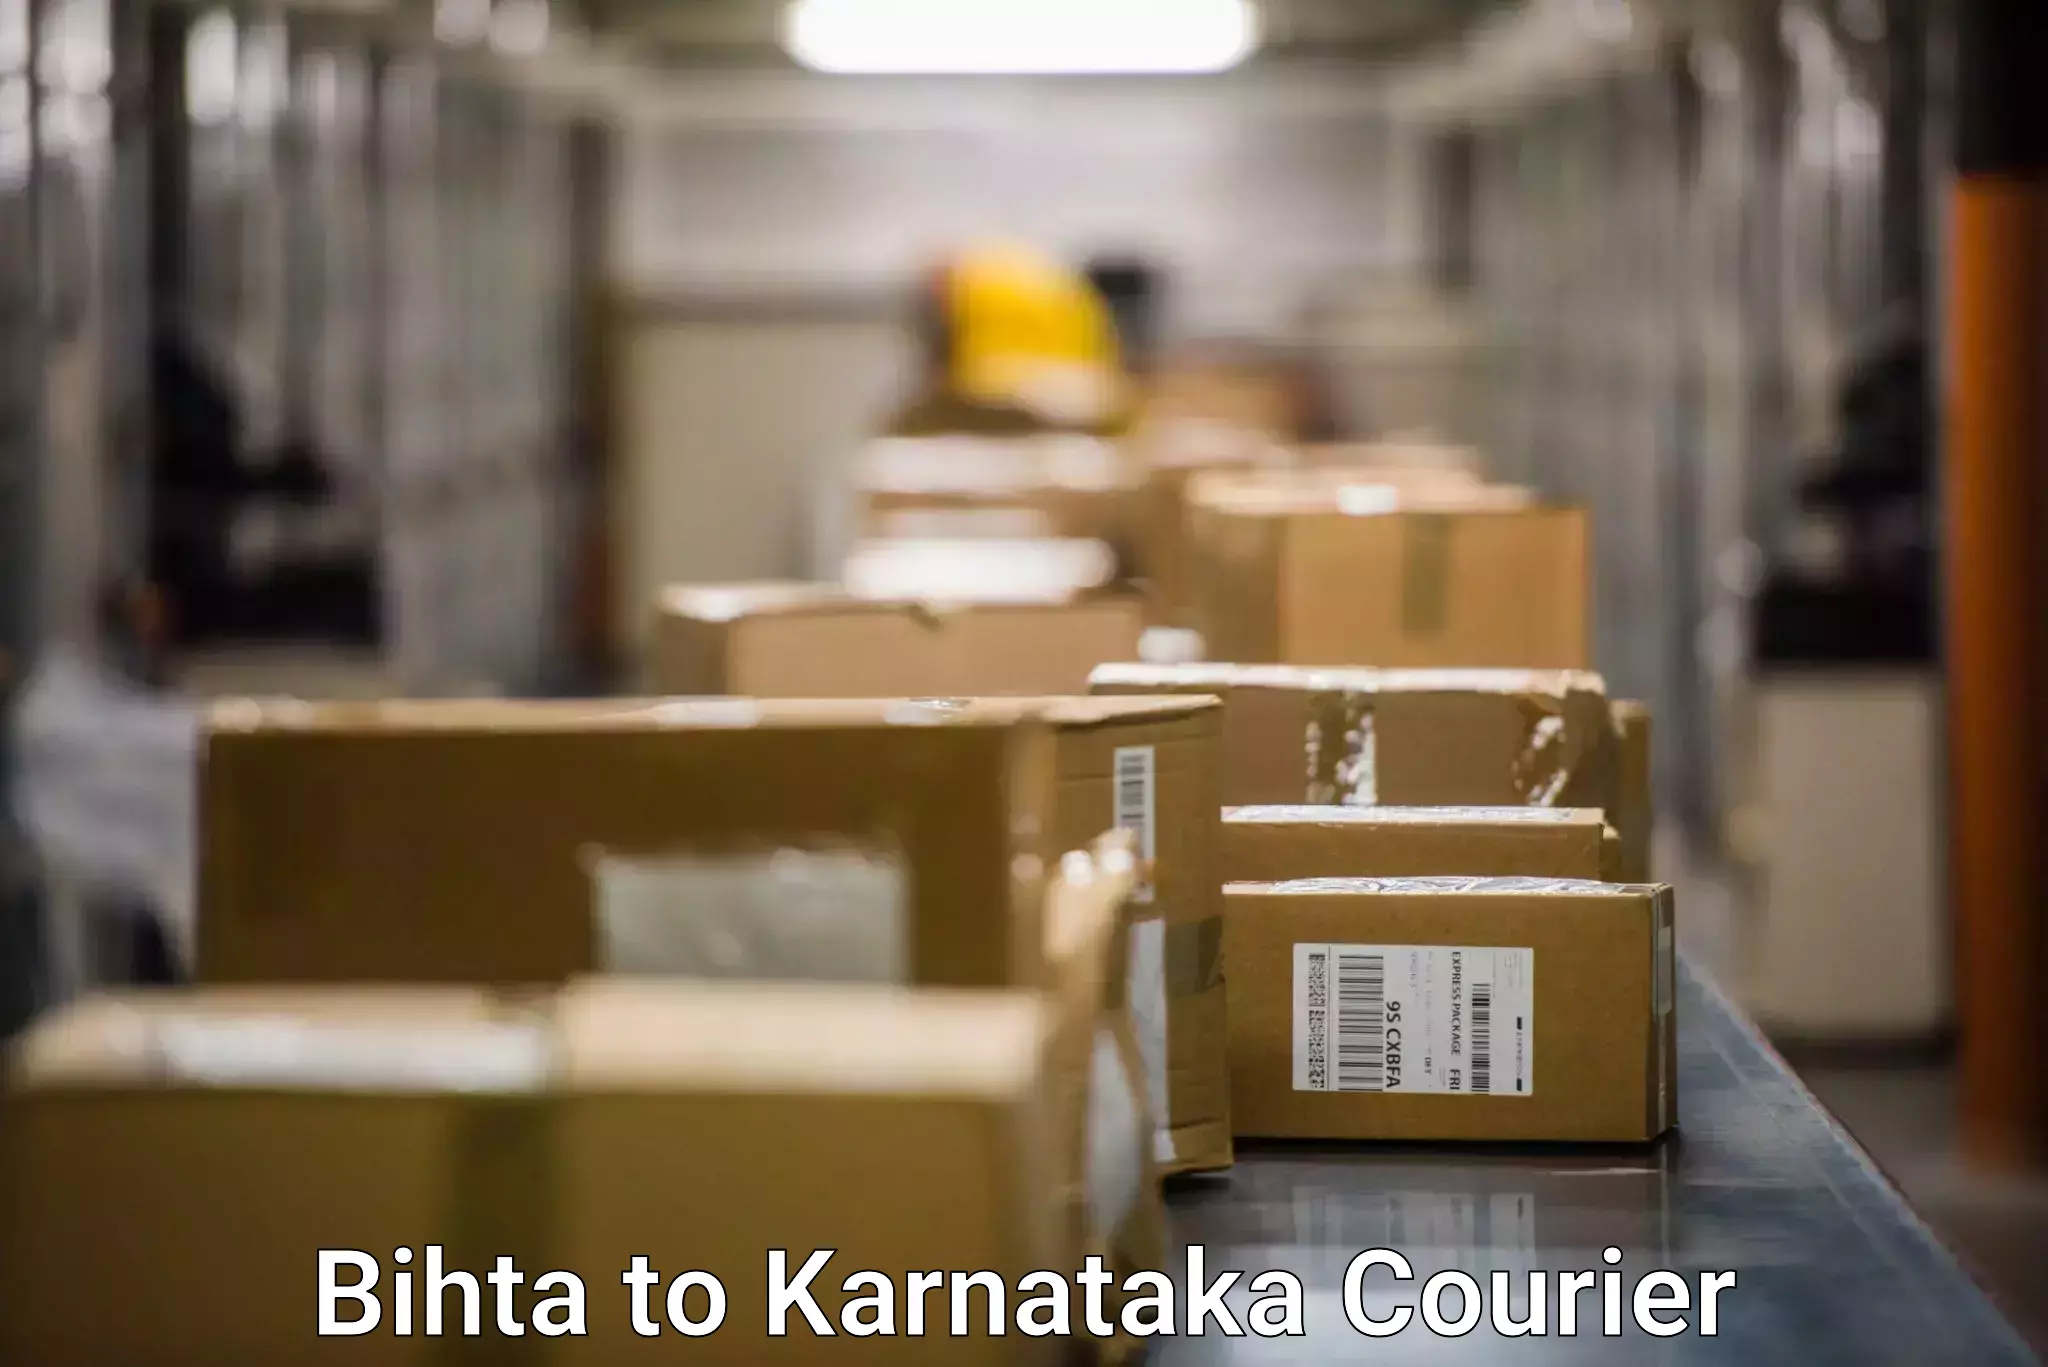 Lightweight courier Bihta to Jayanagar